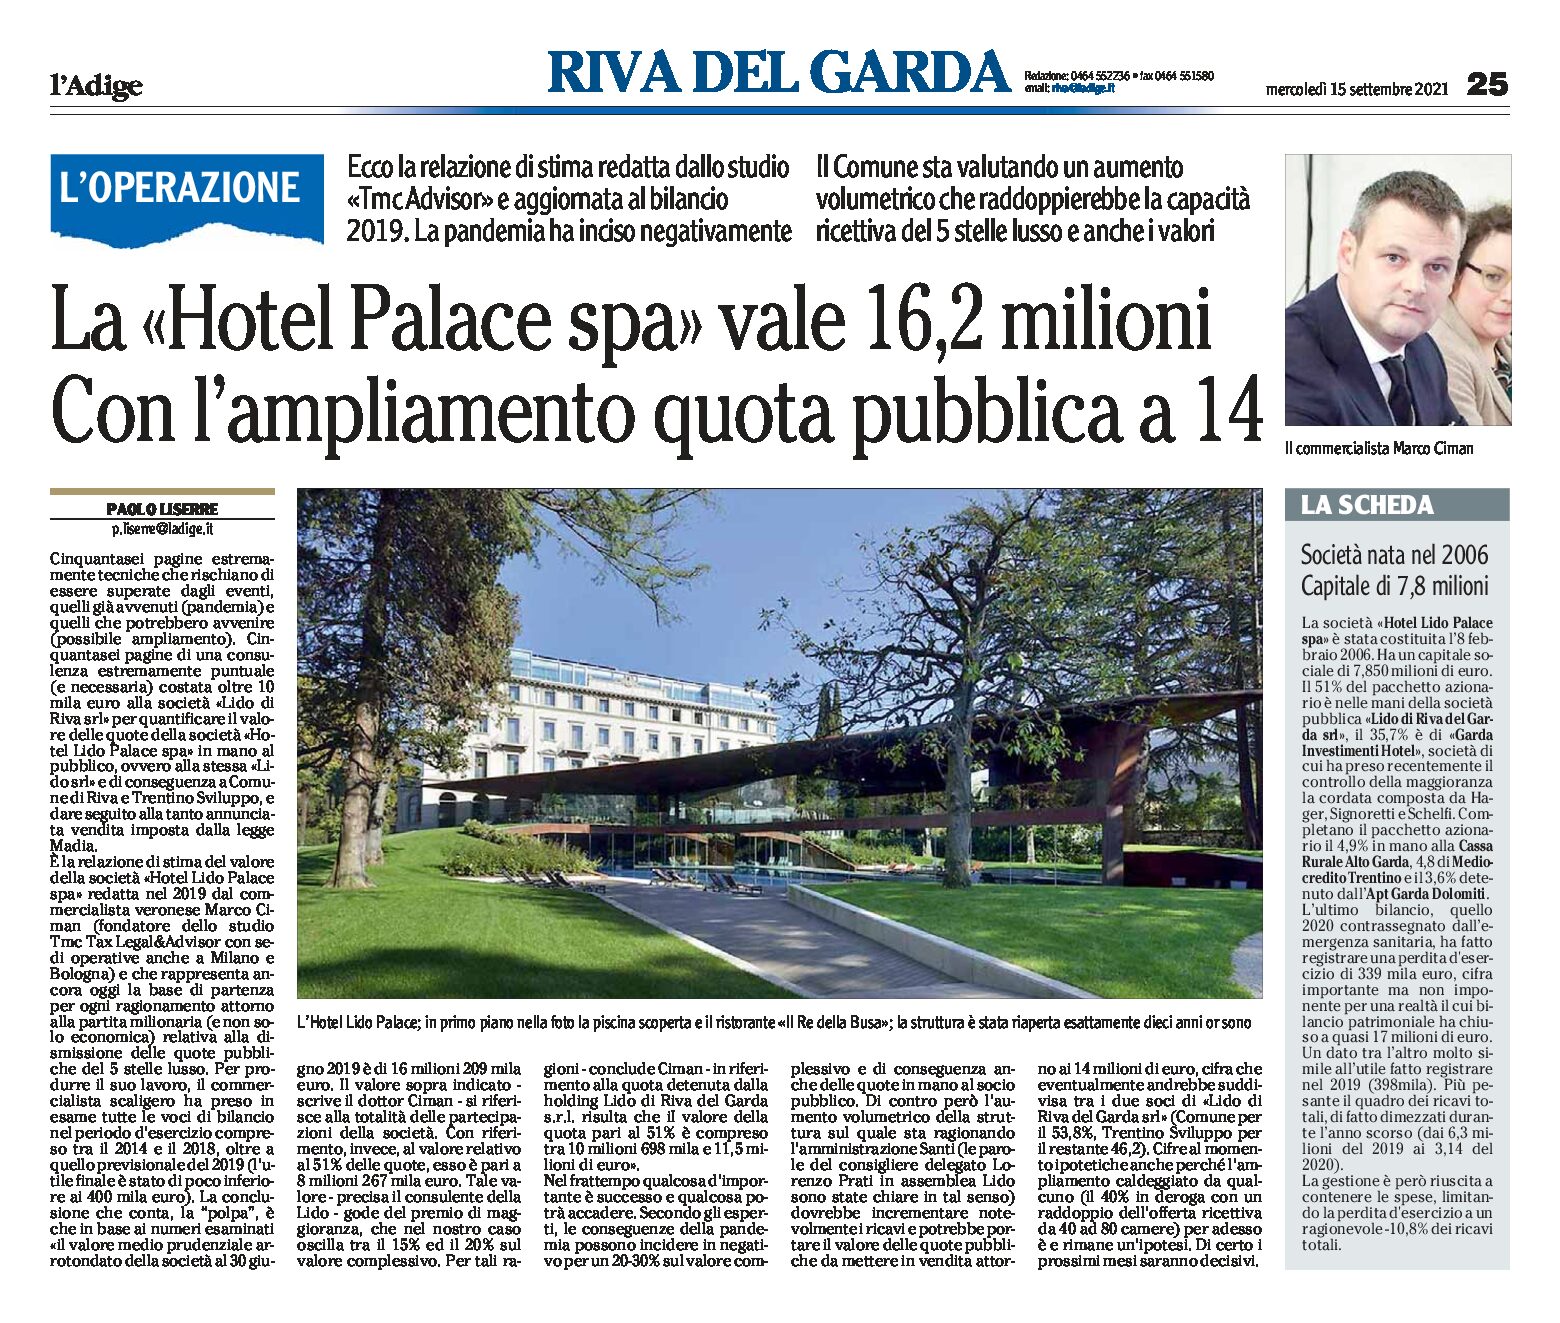 Riva: la “Hotel Palace spa” vale 16,2 milioni. Con l’ampliamento quota pubblica a 14